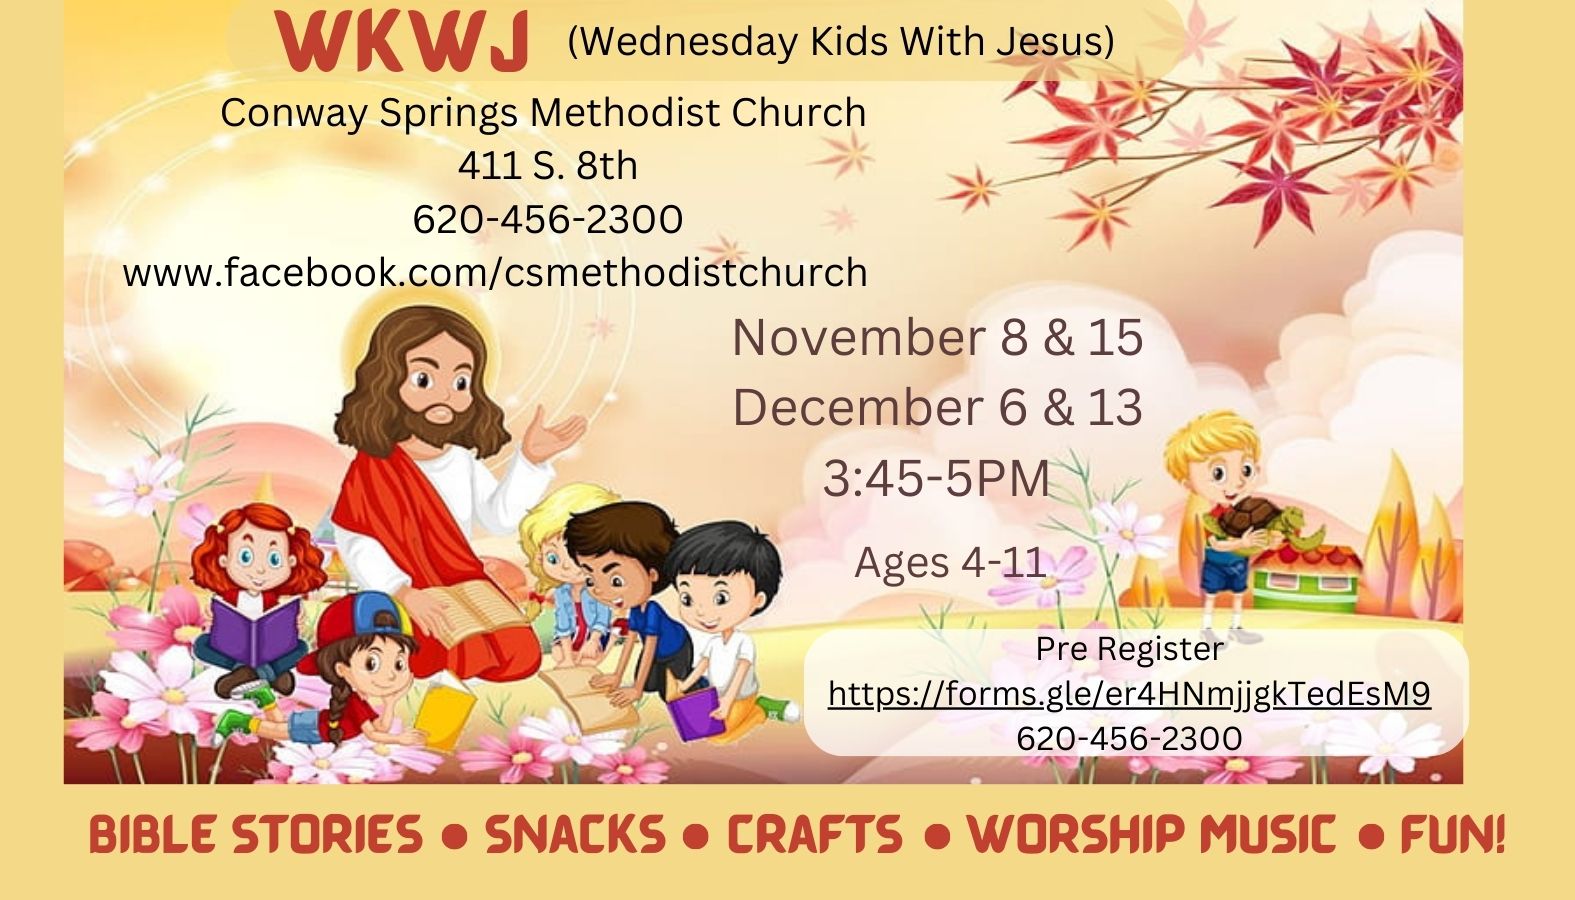  Wednesday Kids With Jesus (WKWJ)